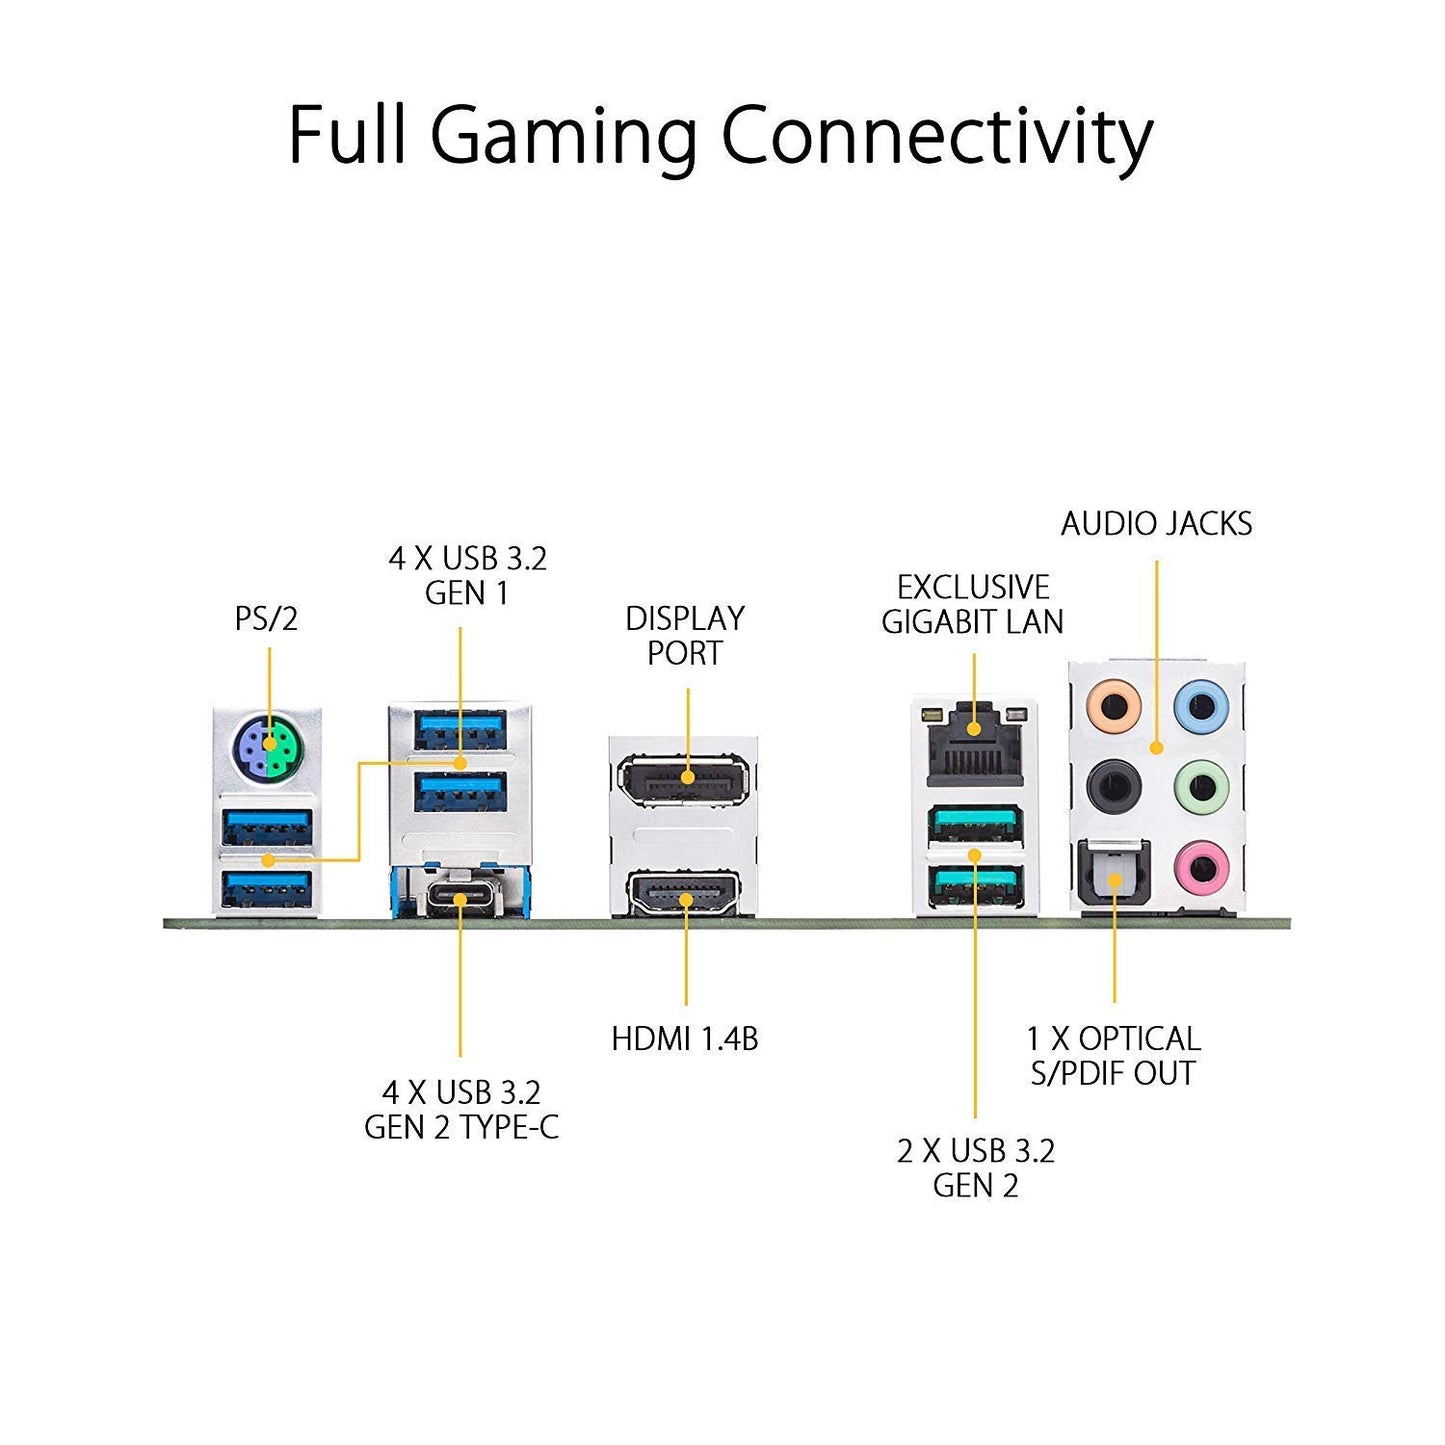 ASUS TUF गेमिंग X570-Plus (Wi-Fi) AMD AM4 ATX मदरबोर्ड WiFi और PCIe 4.0 डुअल M.2 के साथ